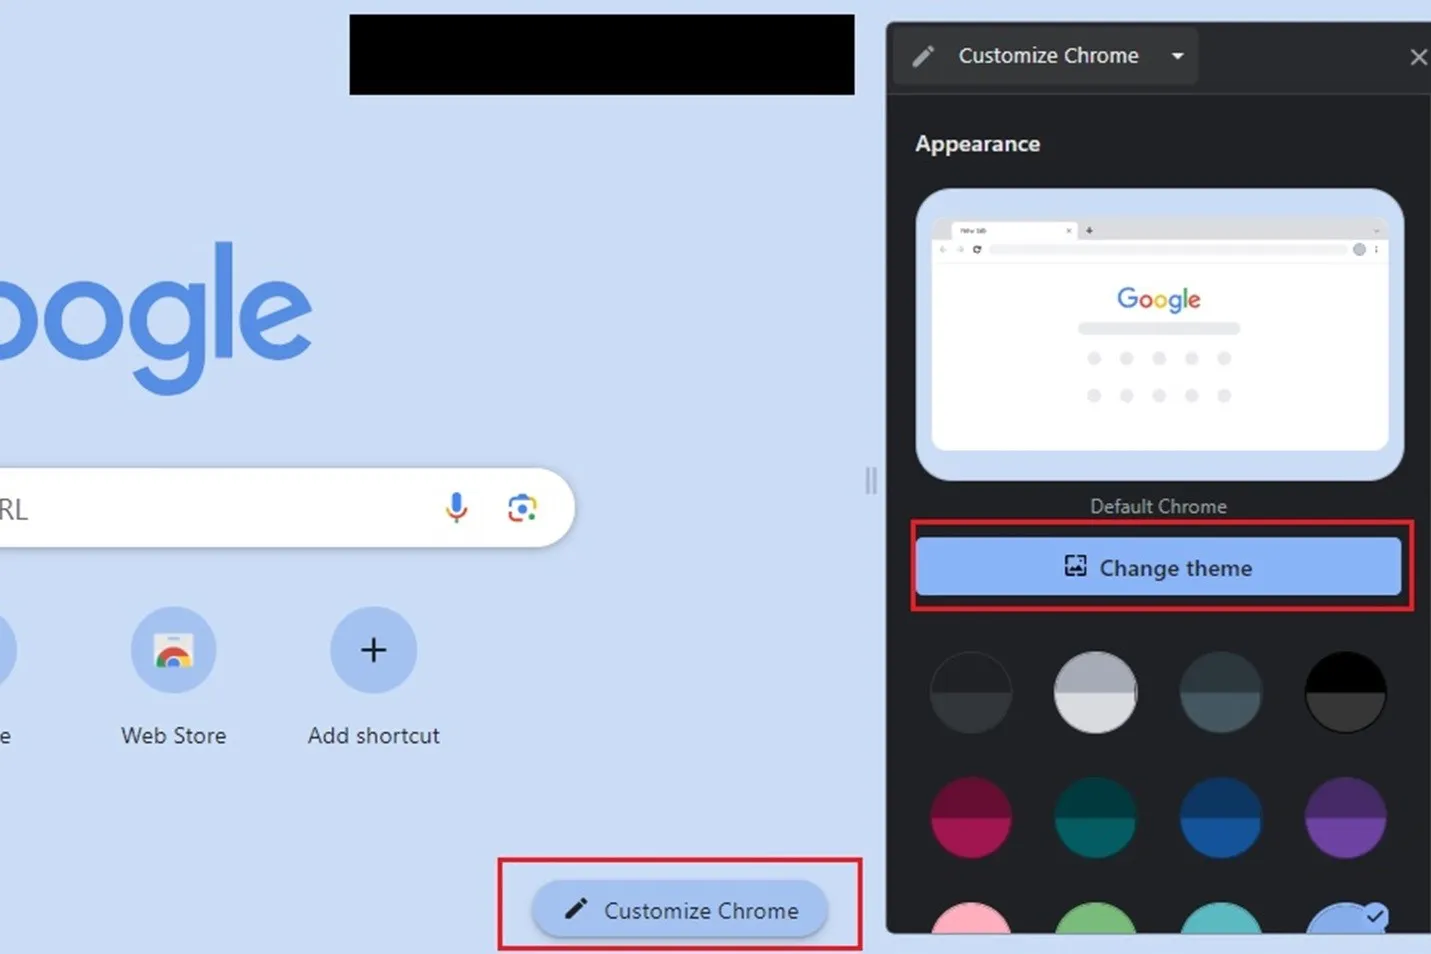 Seleccionar Personalizar Chrome y luego el botón Cambiar tema.